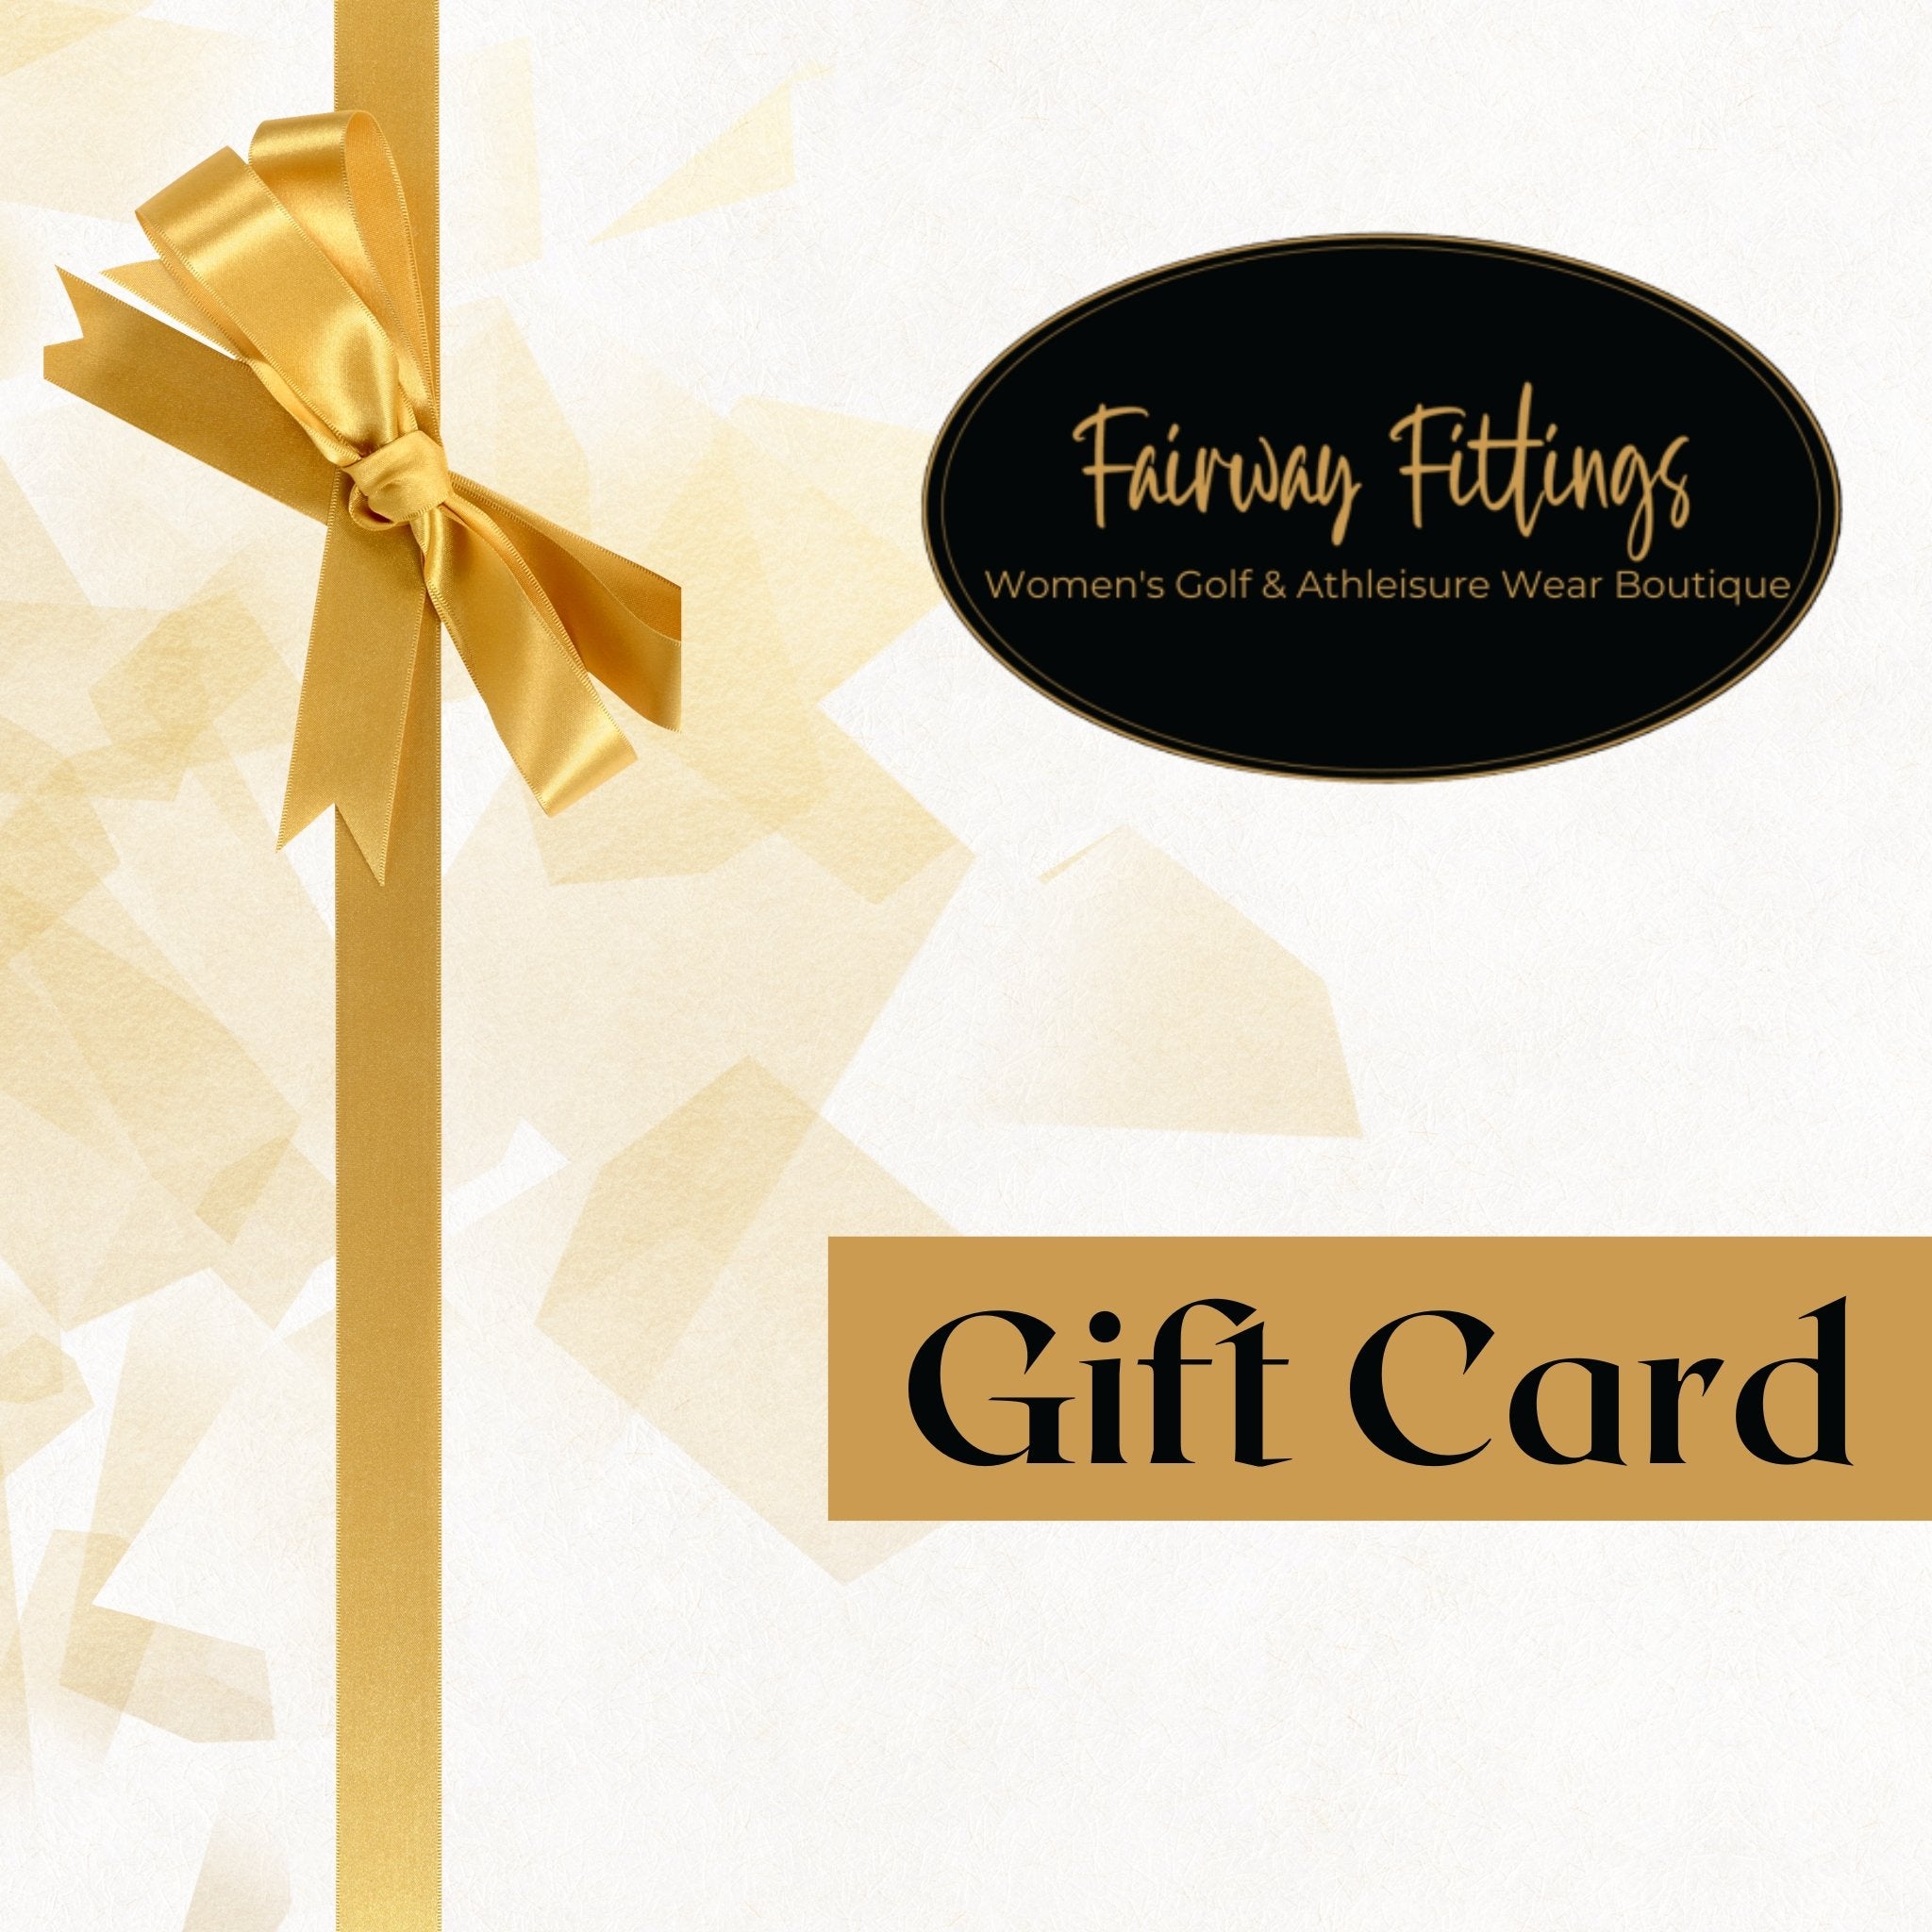 Fairway Fittings - Gift Card - Fairway Fittings